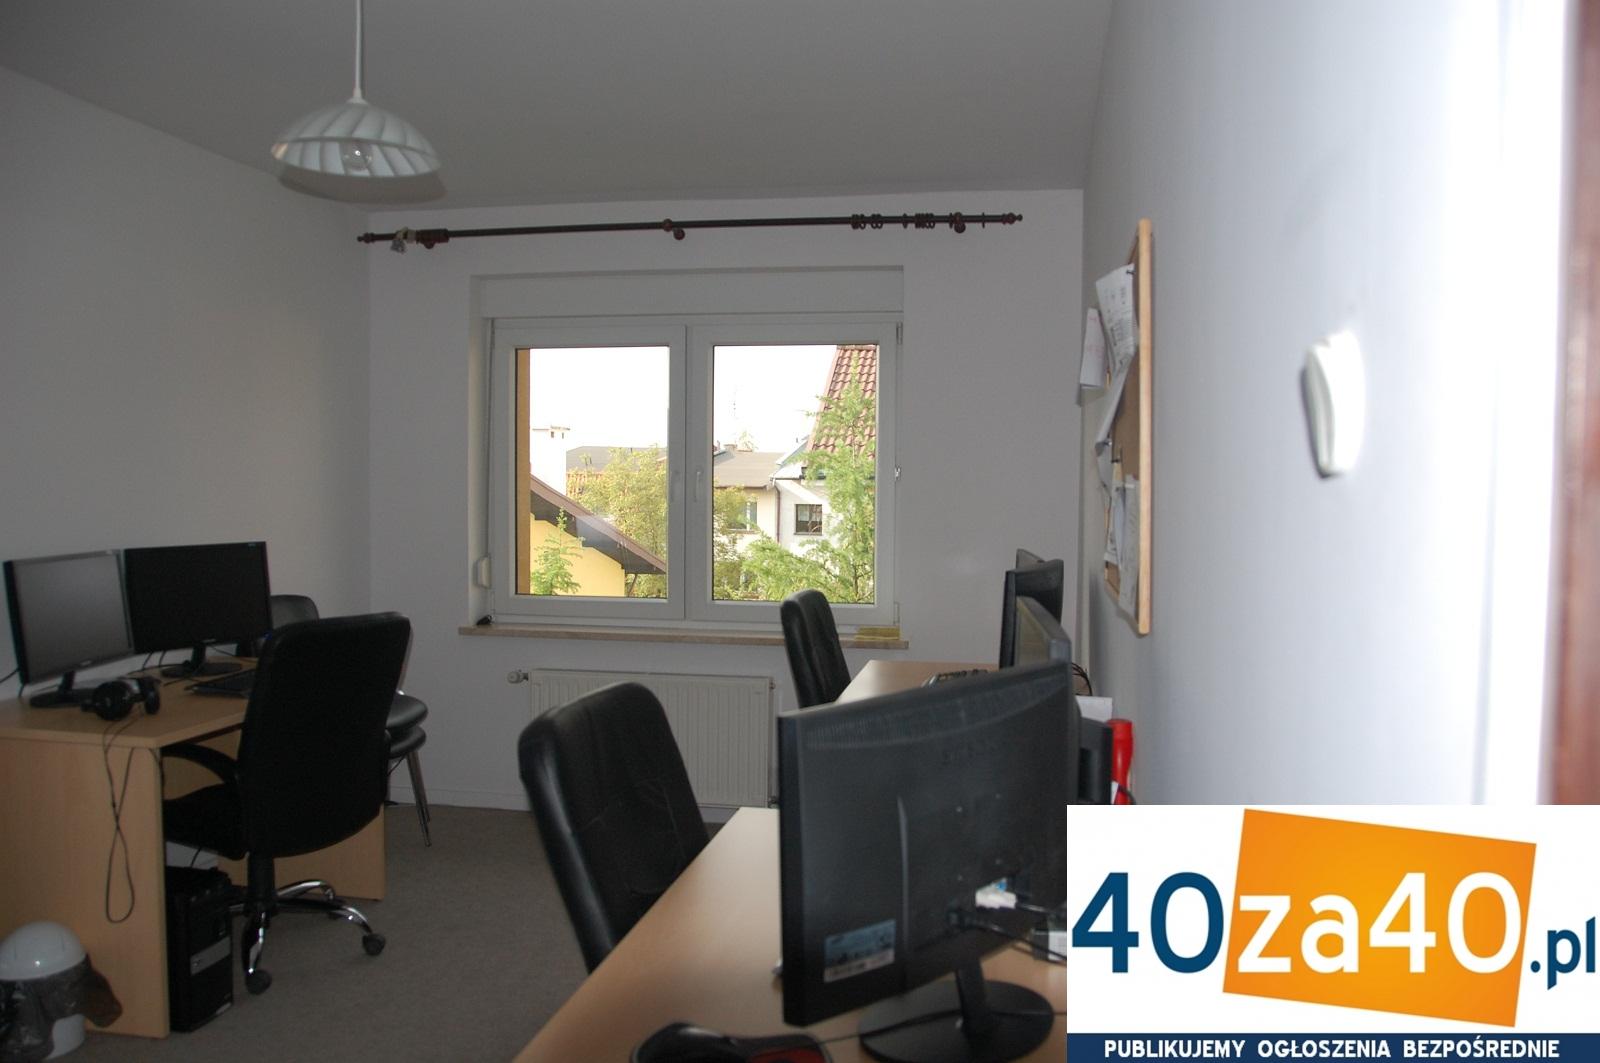 Dom do wynajęcia, powierzchnia: 190 m2, pokoje: 6, cena: 3 500,00 PLN, Wrocław, kontakt: 0717223989